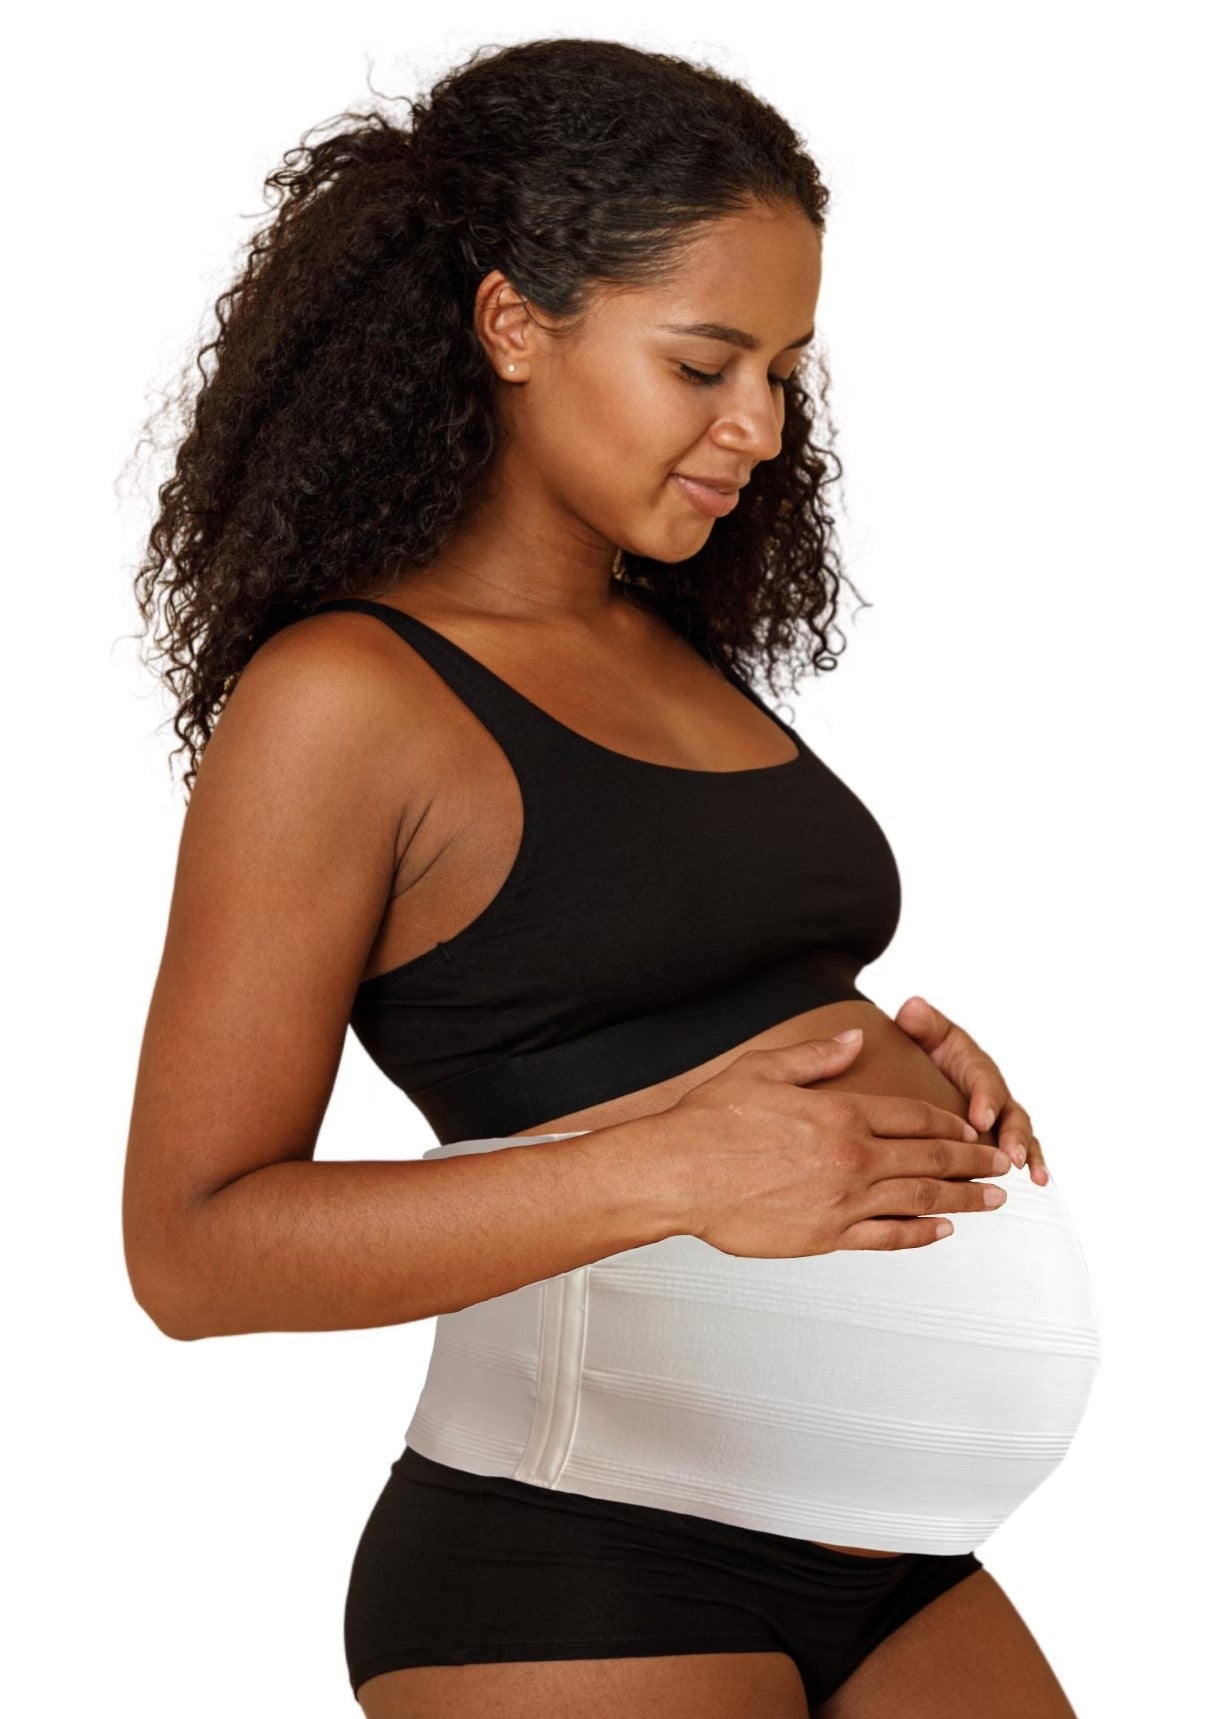 Bmama Premium Maternity Support Belt - Beige